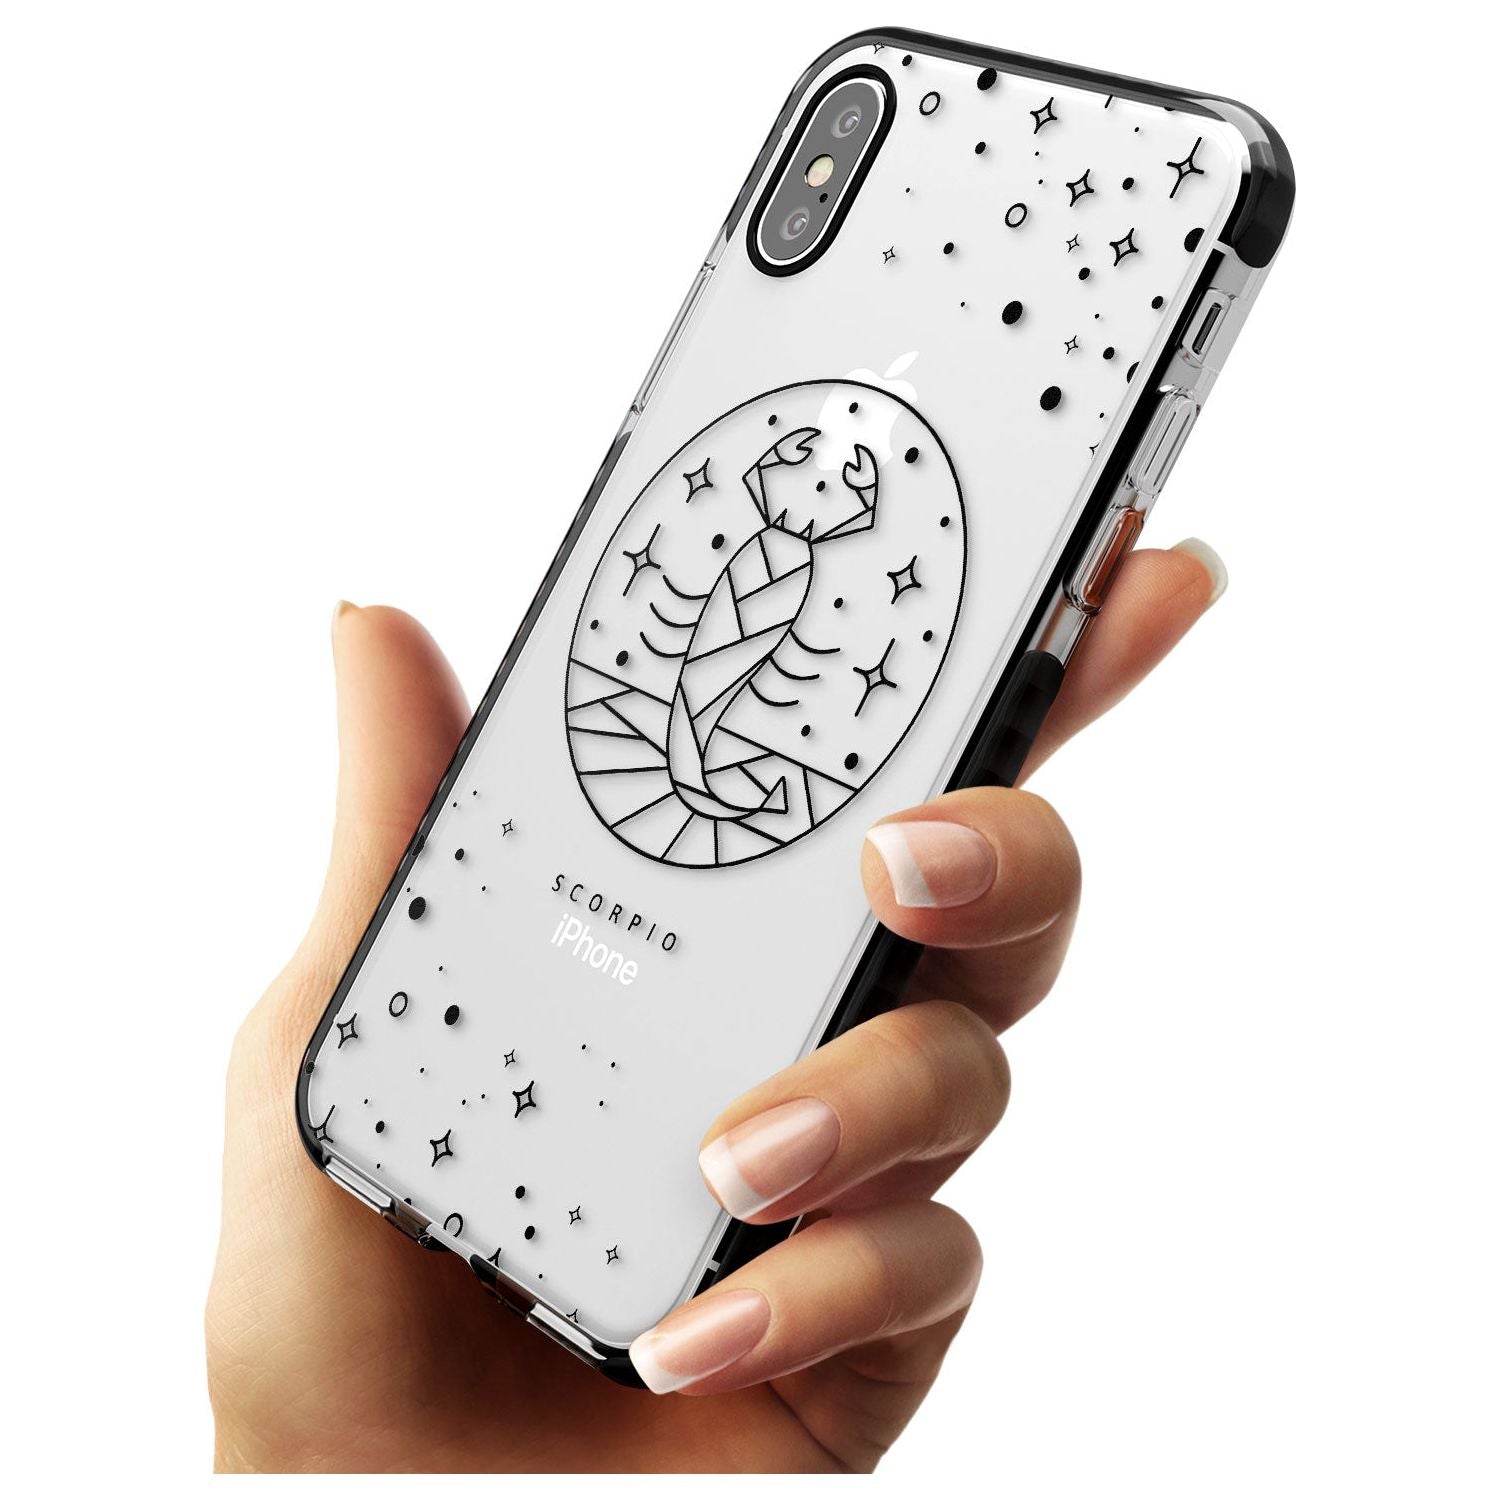 Scorpio Emblem - Transparent Design Black Impact Phone Case for iPhone X XS Max XR